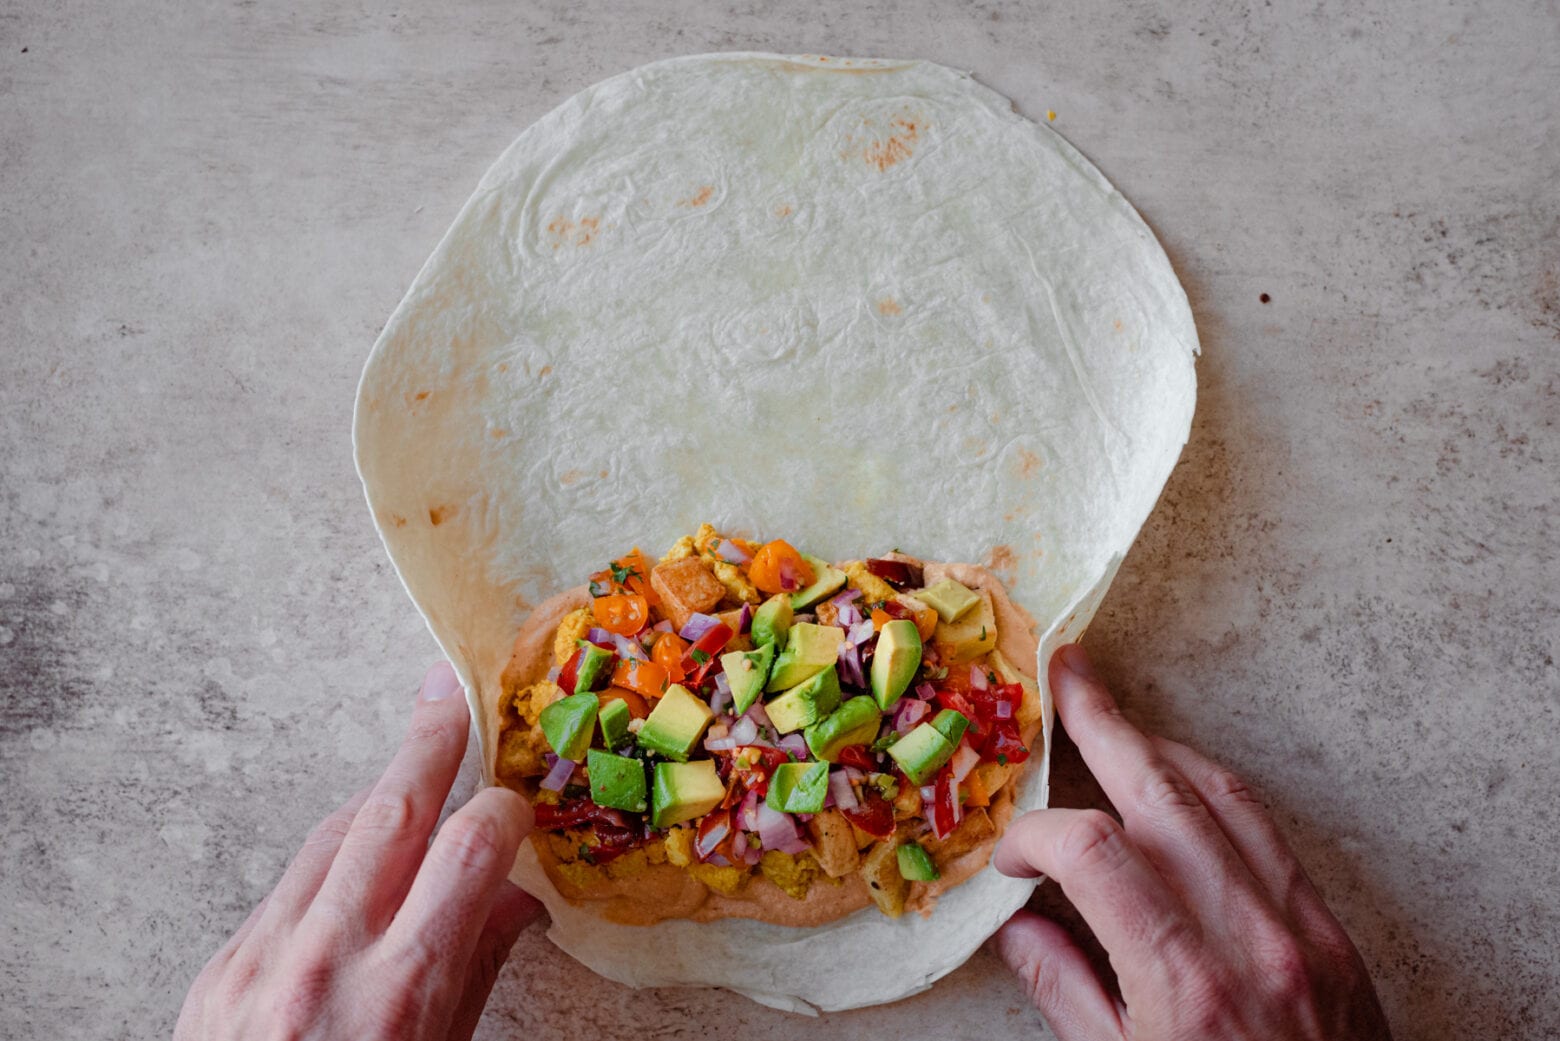 man's hands rolling up a vegan breakfast burrito